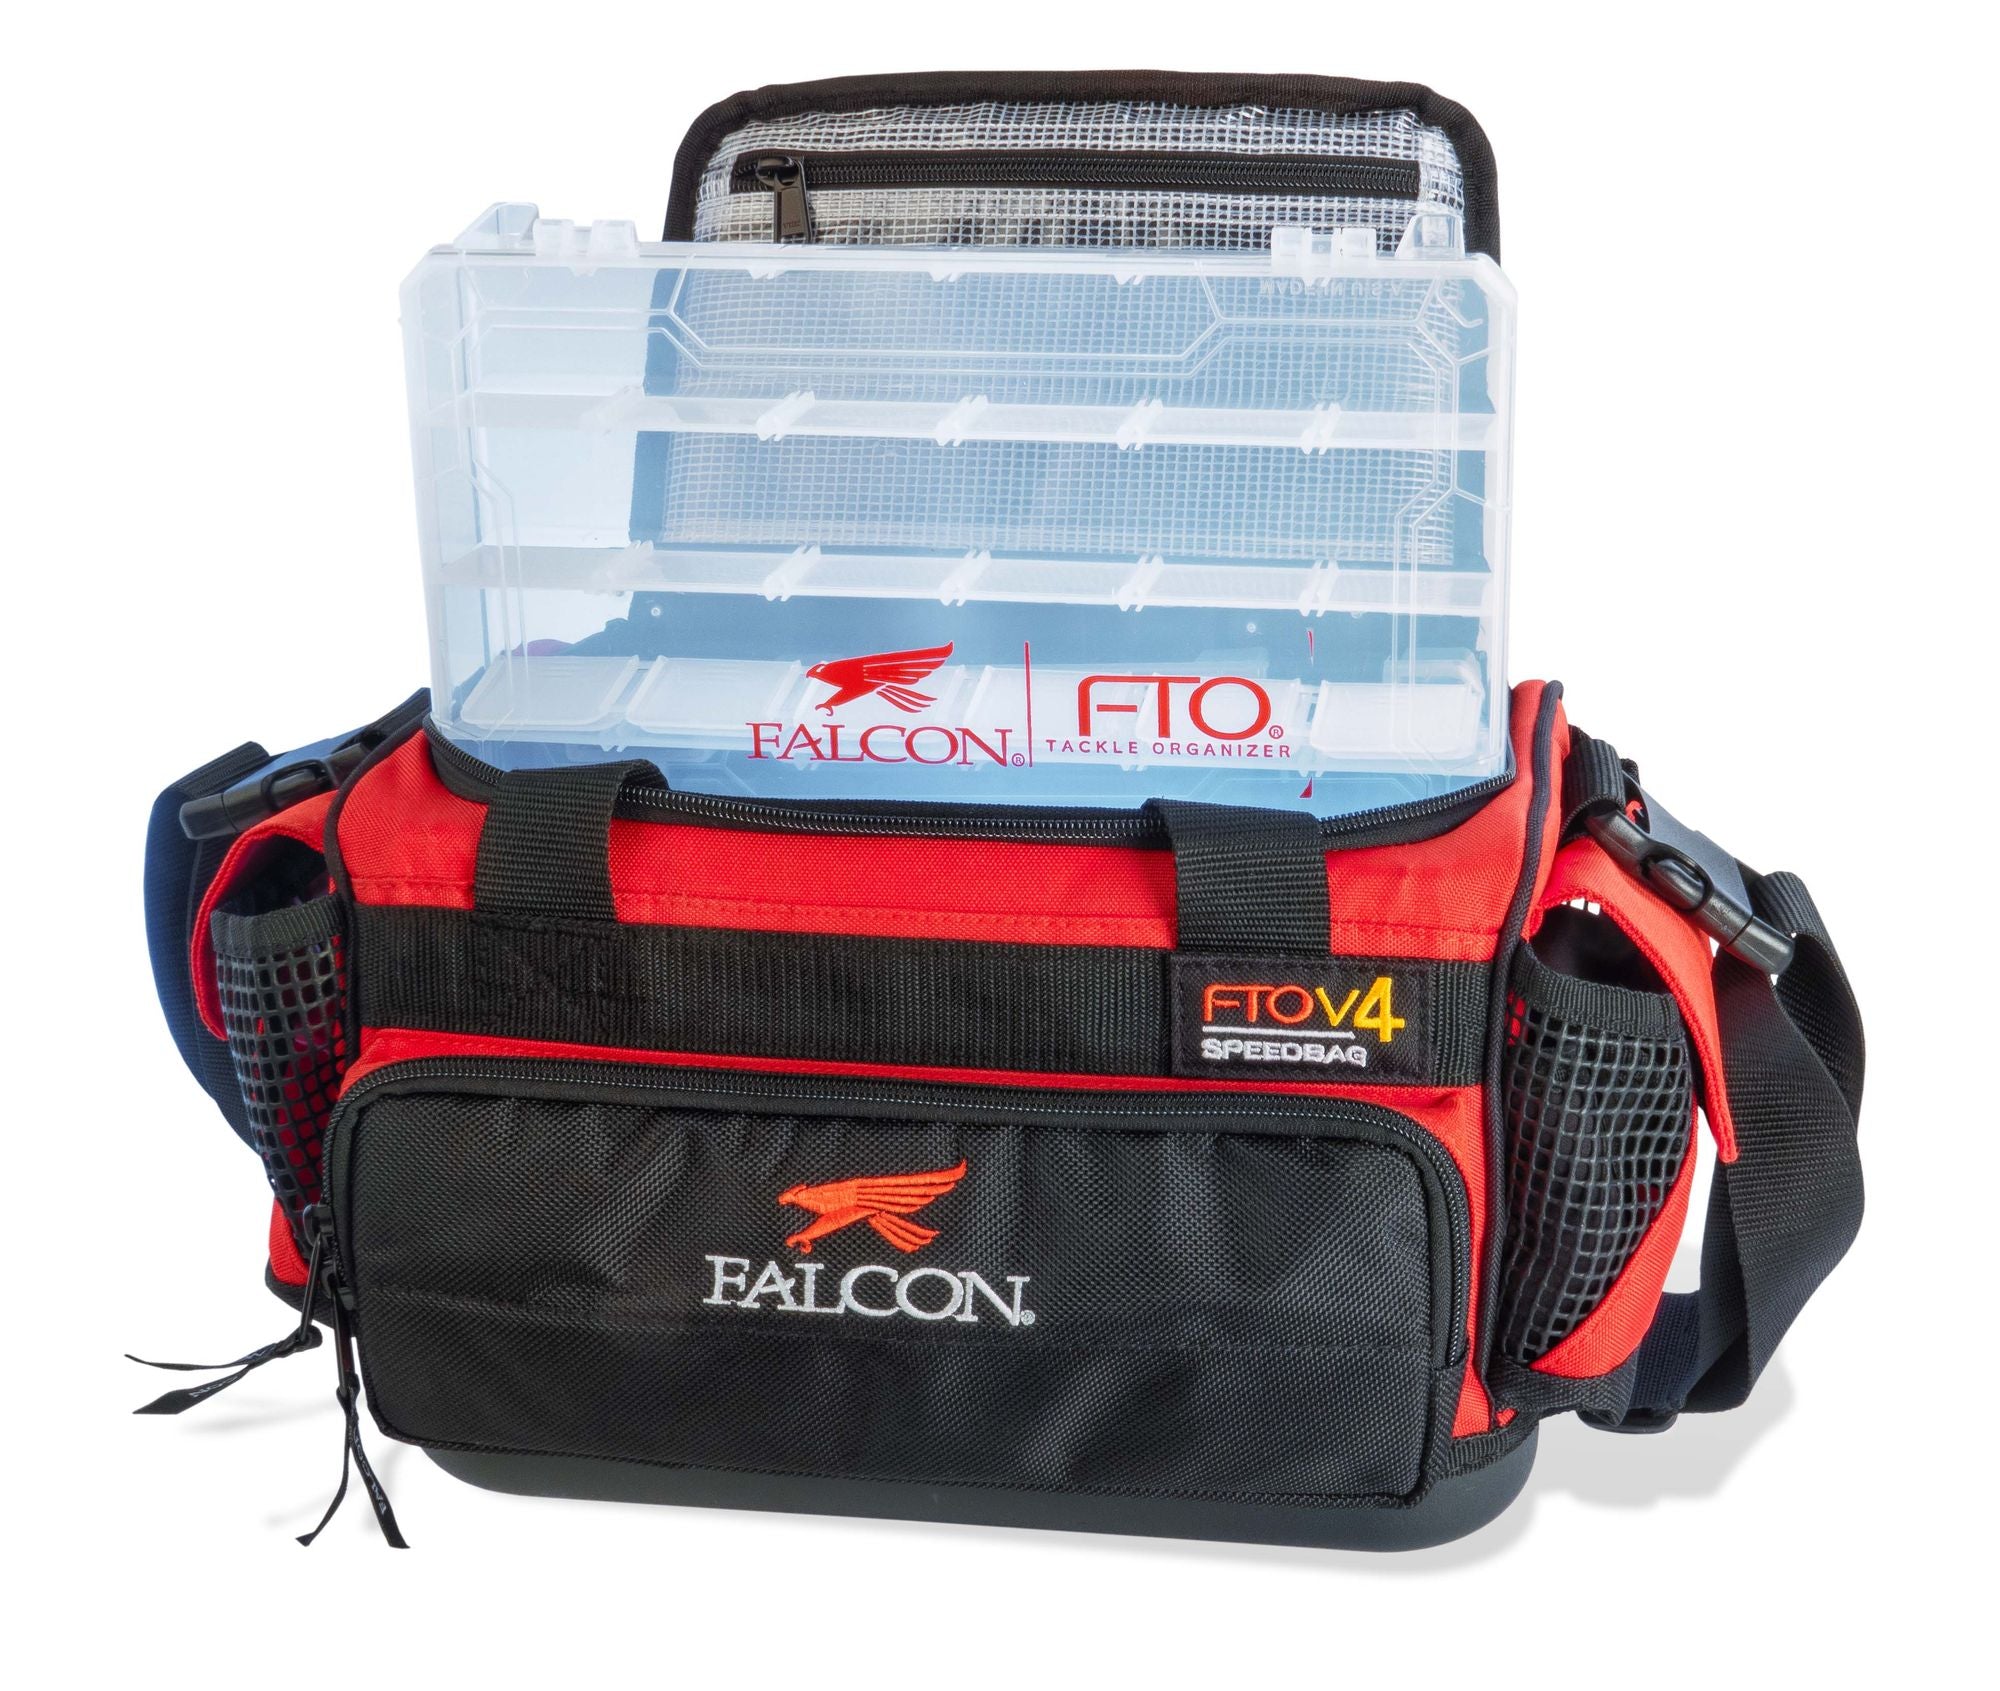 Aste Falcon, Falcon FTO V4 Speedbag